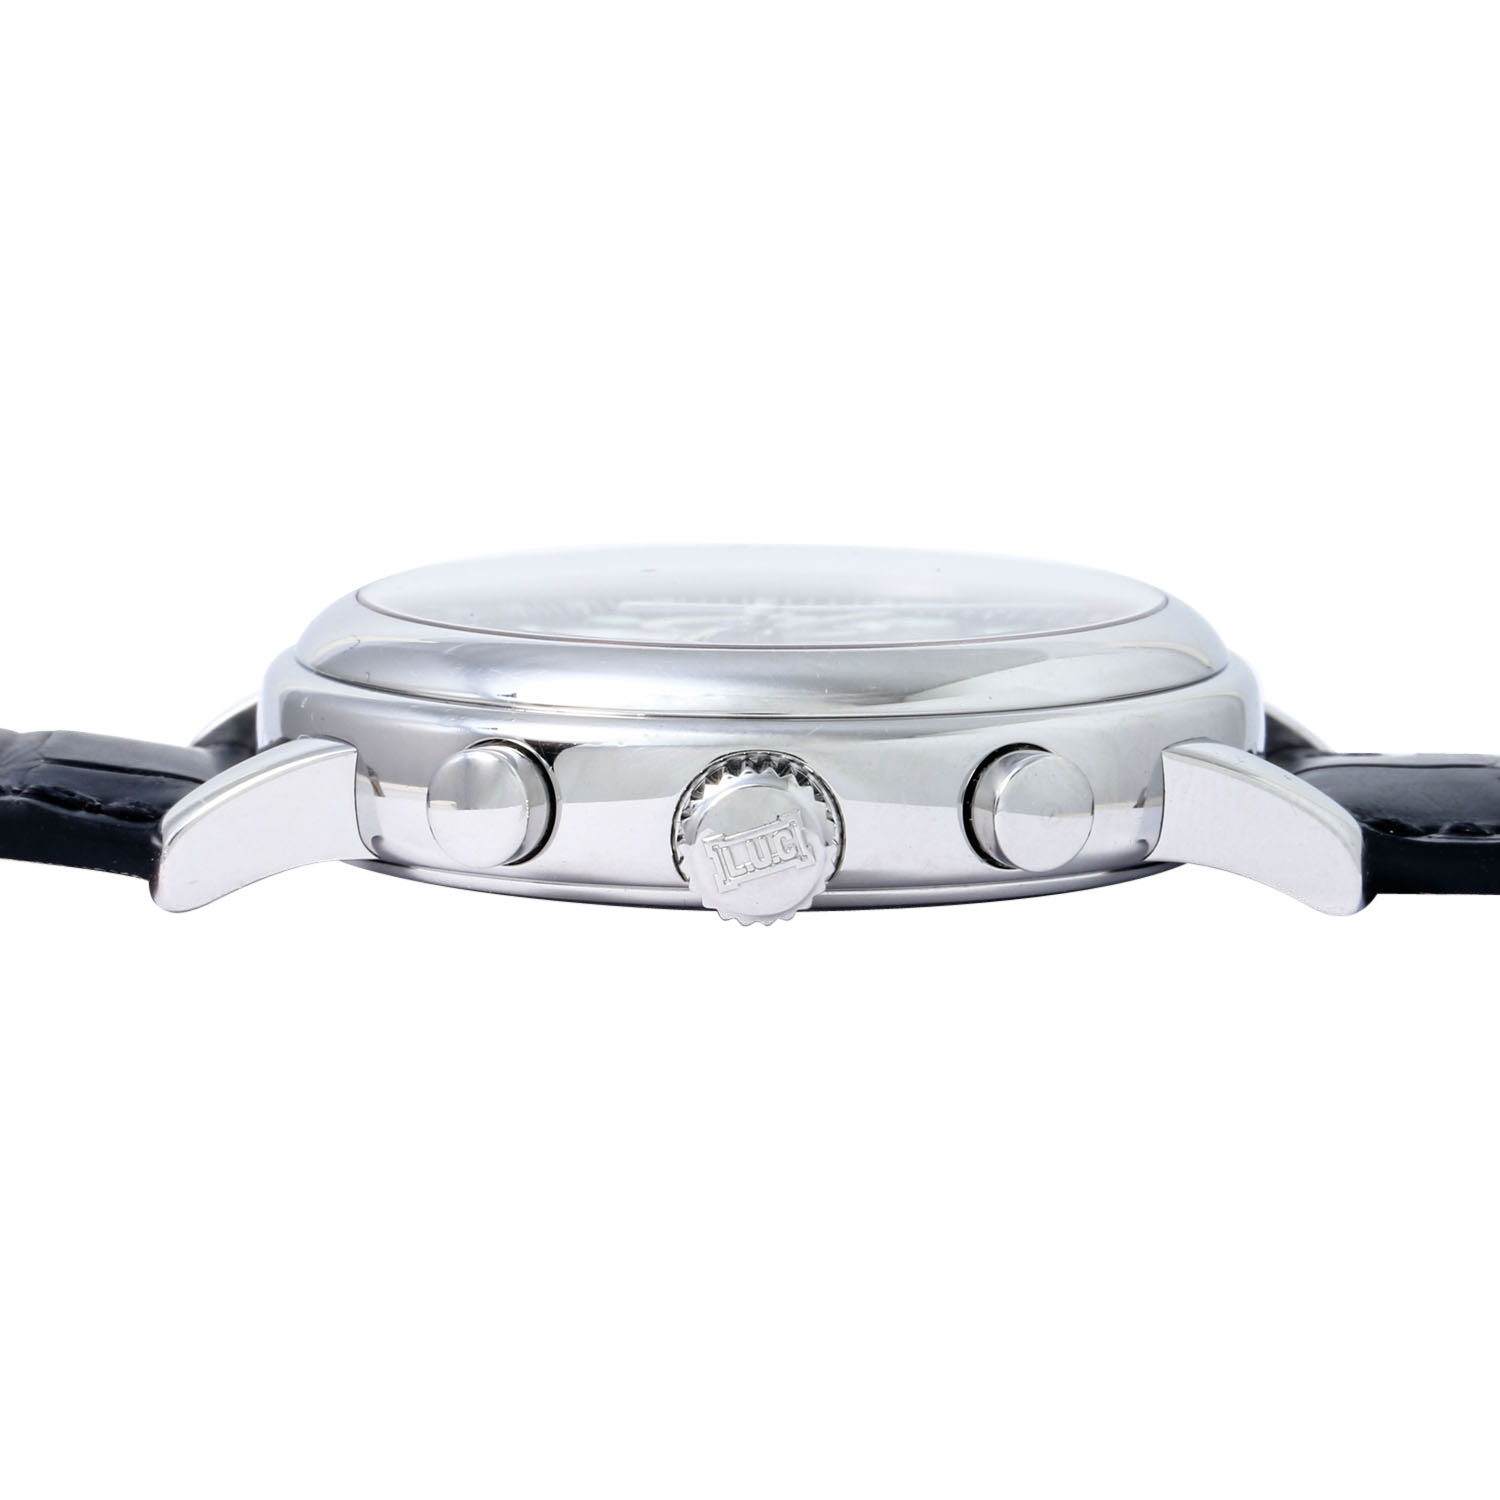 CHOPARD Mille Miglia Chronograph, Ref. 16/8331-3001. Armbanduhr. Ca. 2000er Jahre. - Bild 3 aus 9